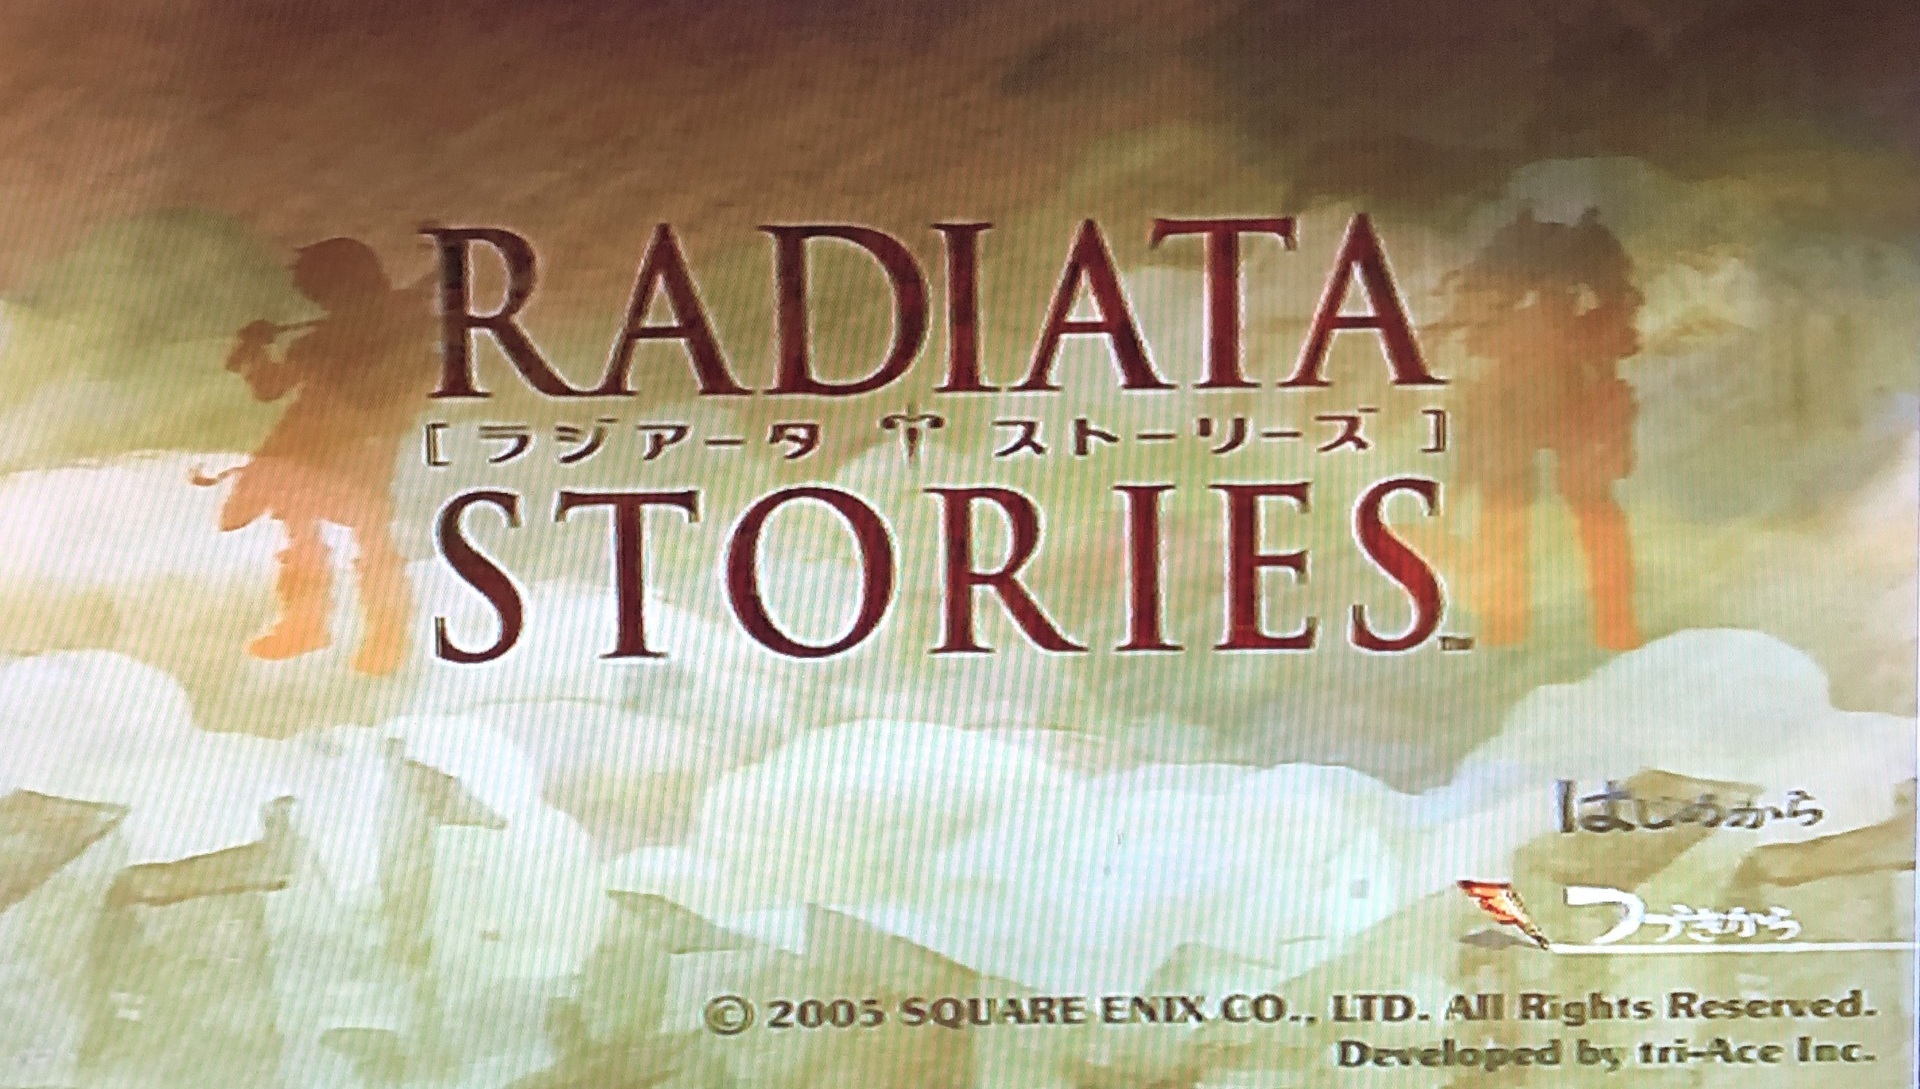 Radiata Stories ラジアータ ストーリーズ は隠された名作だとオモイダス 少しだけネタバレあり 昔のゲームをオモイダス